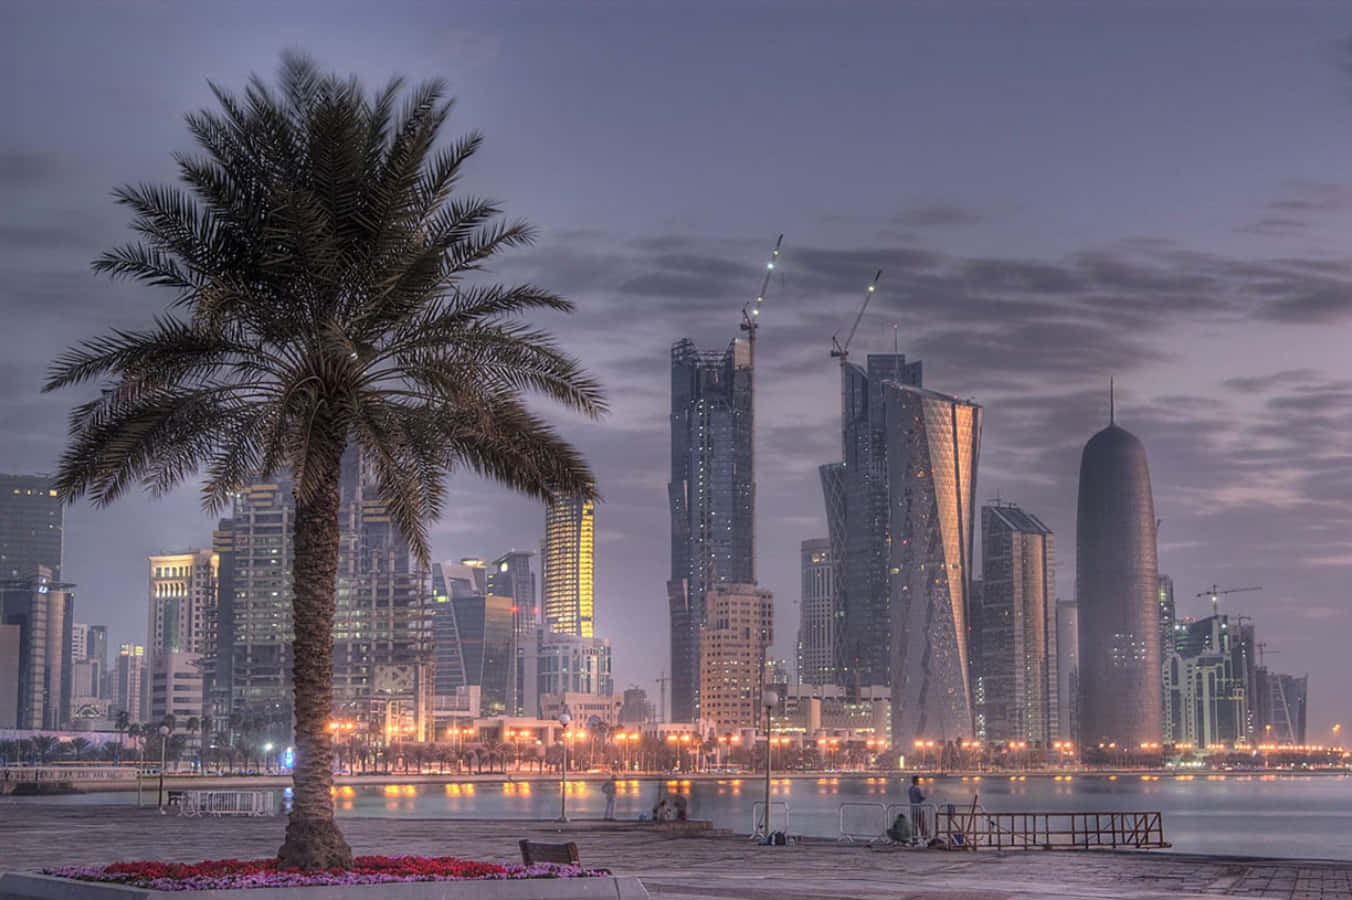 Bildskyskraporna I Qatar